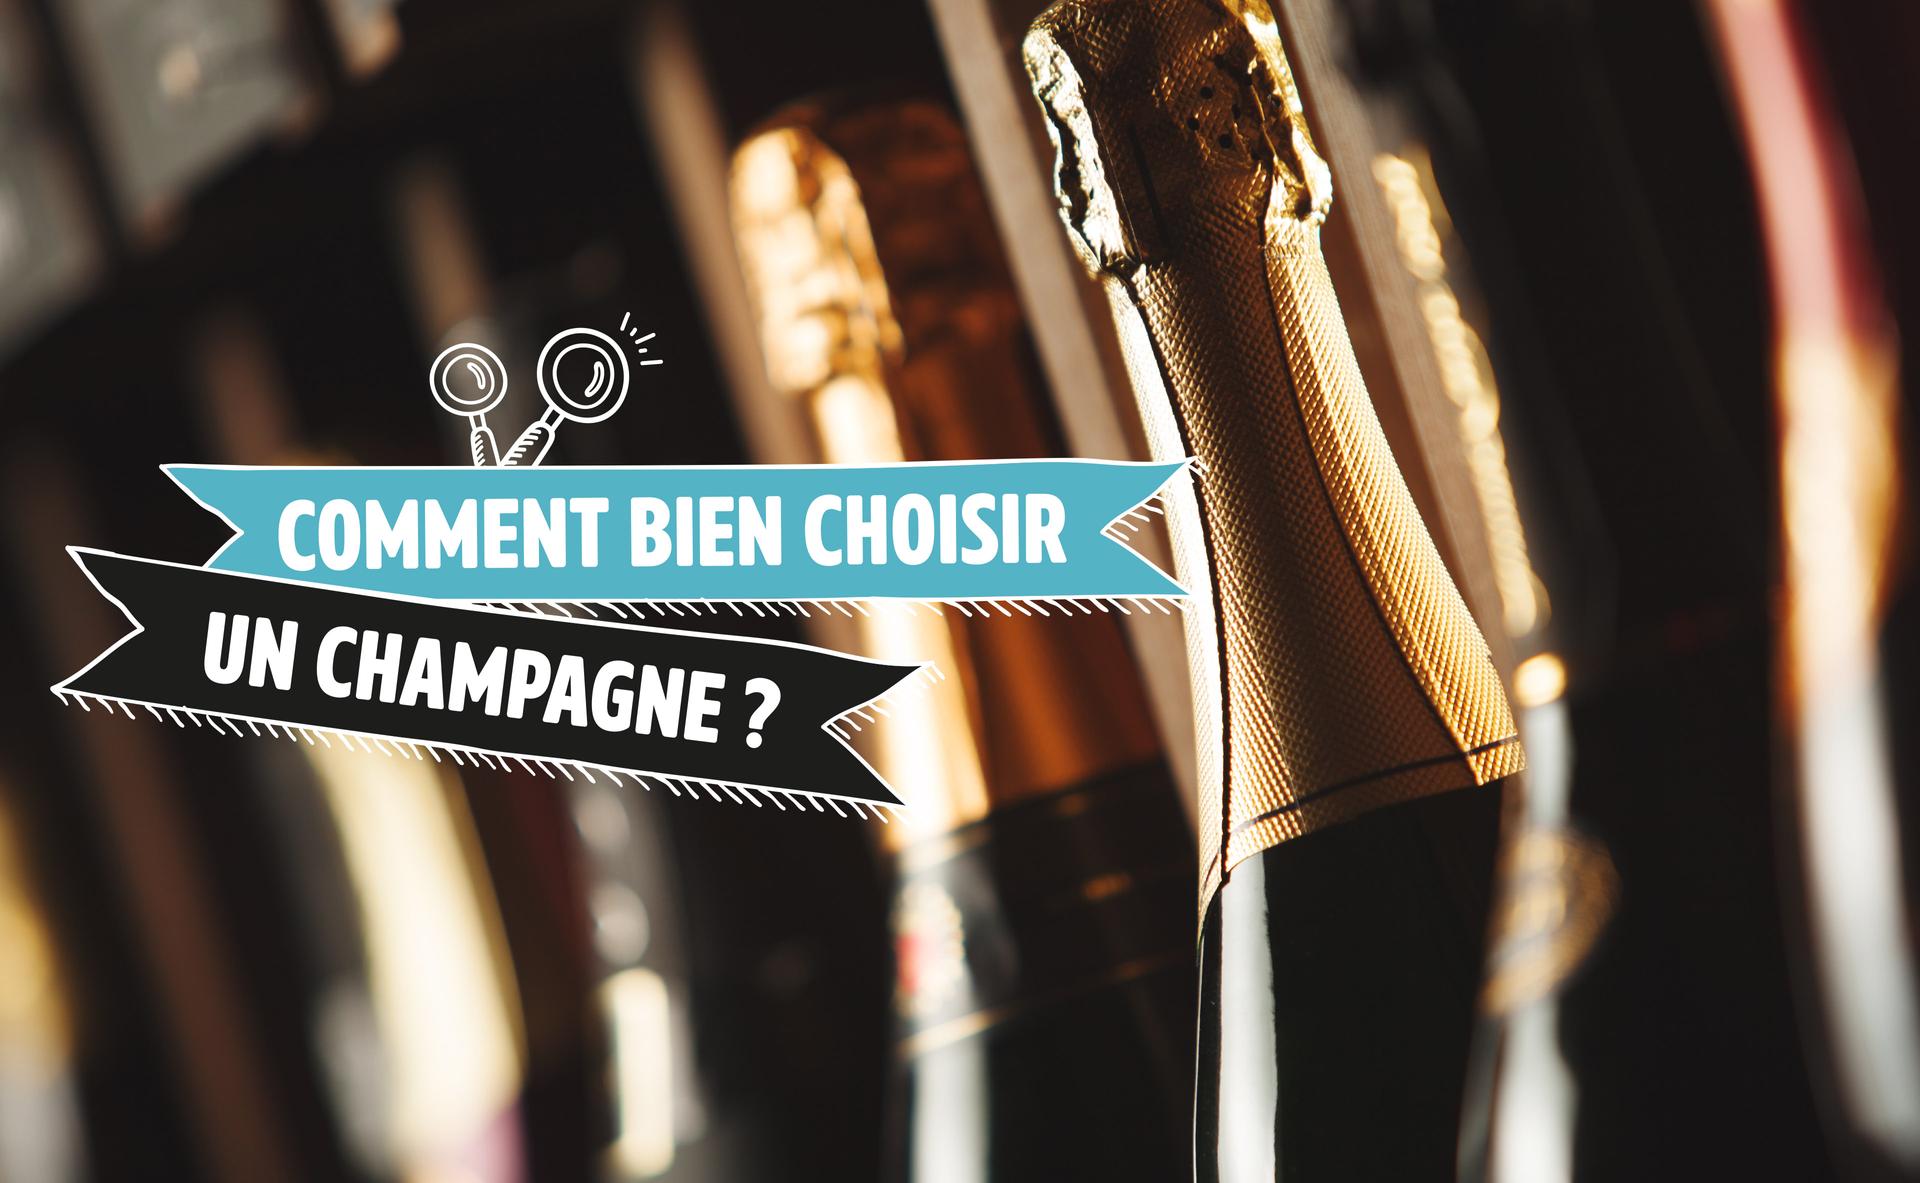 Comment bien choisir un champagne ?